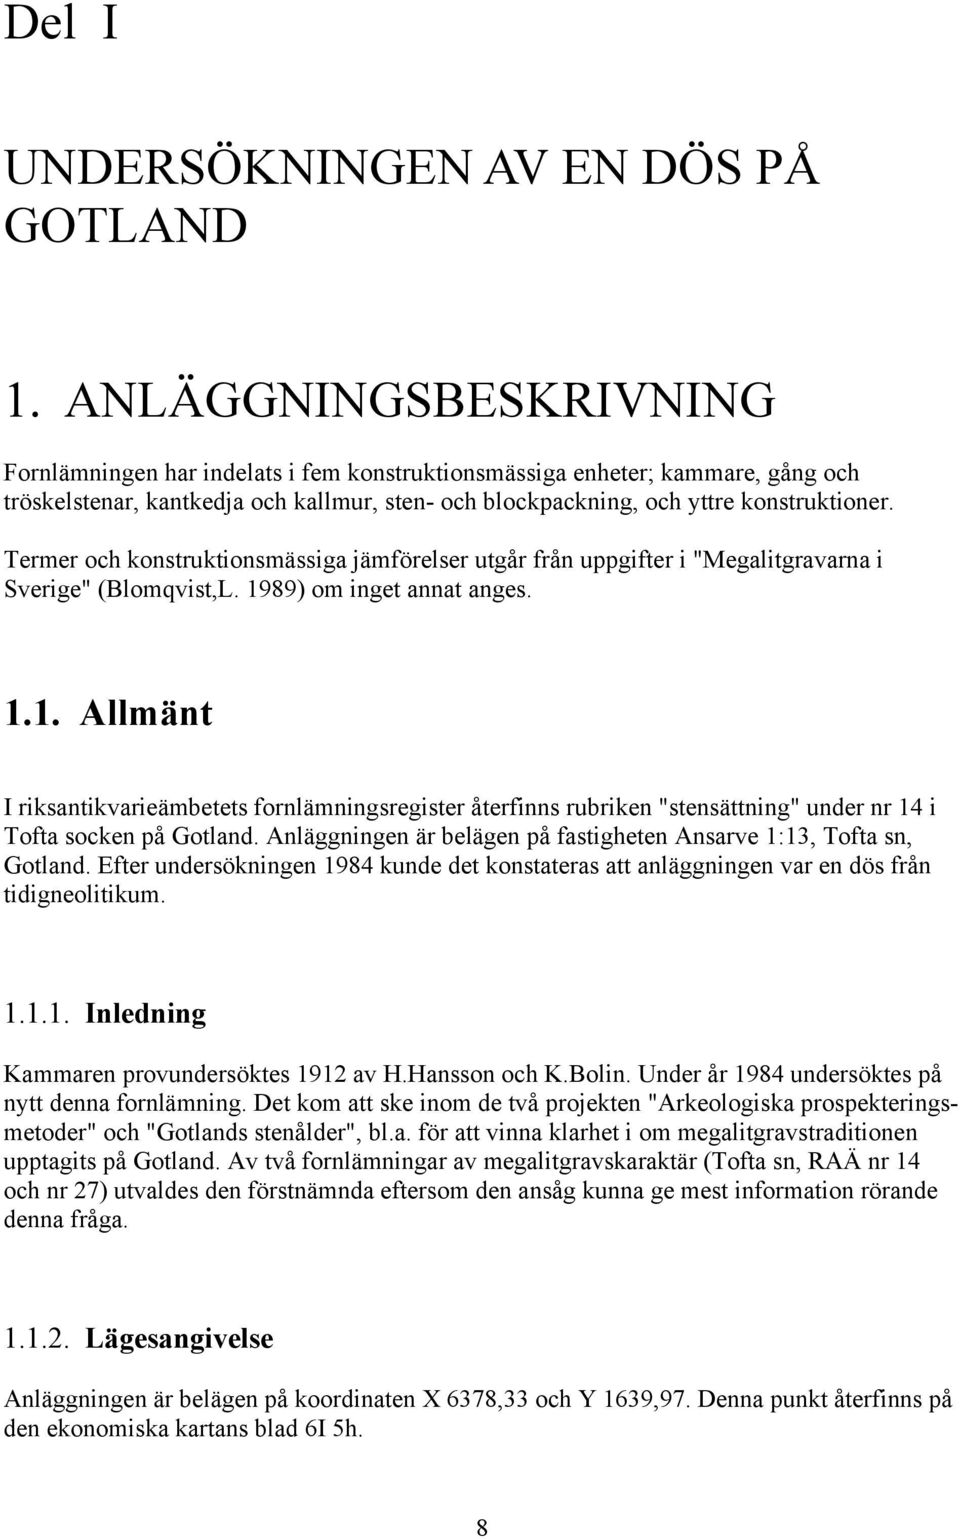 Termer och konstruktionsmässiga jämförelser utgår från uppgifter i "Megalitgravarna i Sverige" (Blomqvist,L. 19